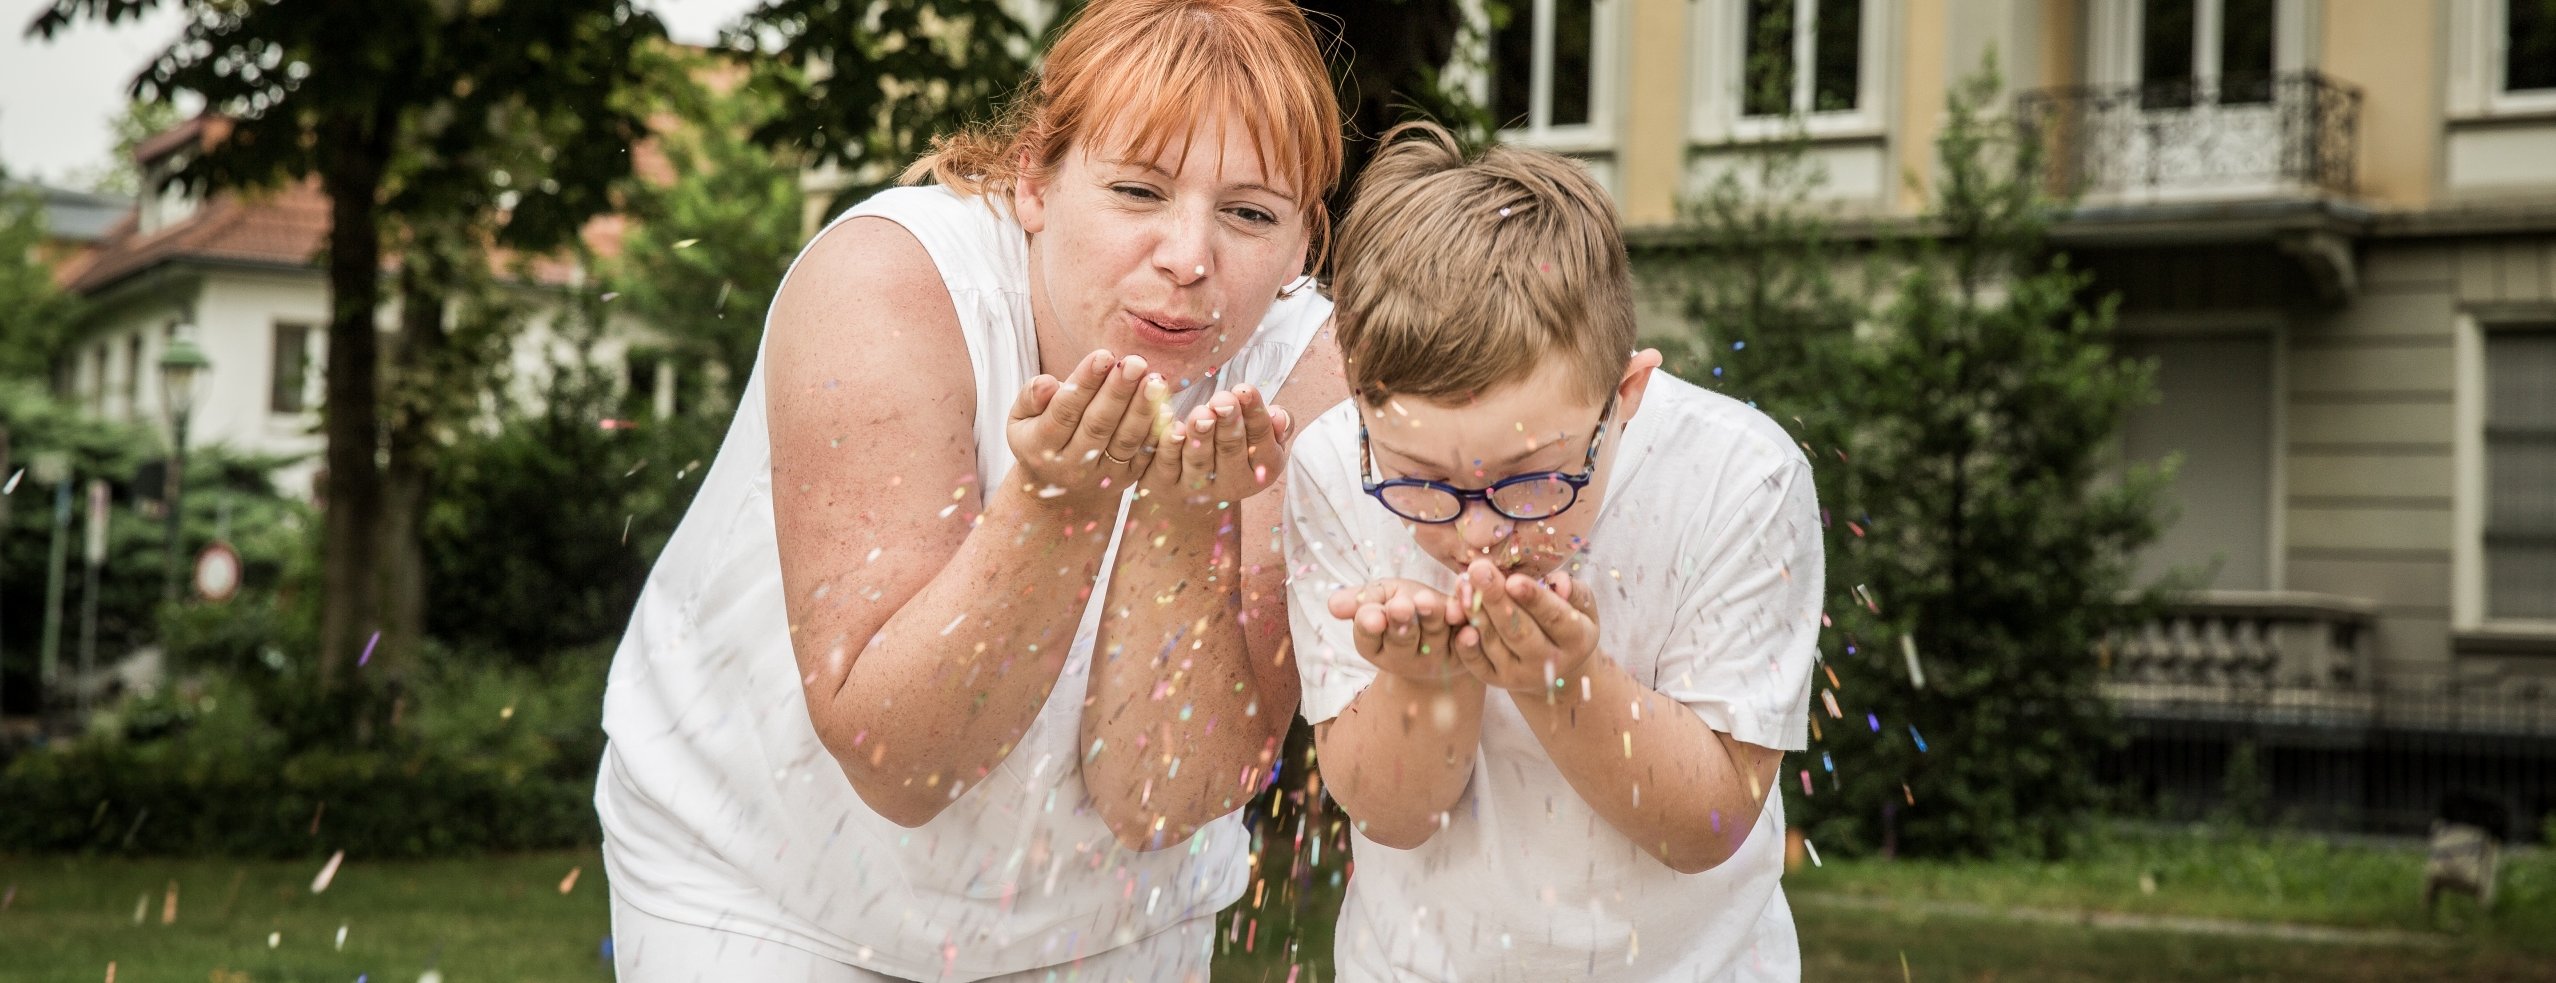 Mutter und Sohn freuen sich über herabregnendes Konfetti.